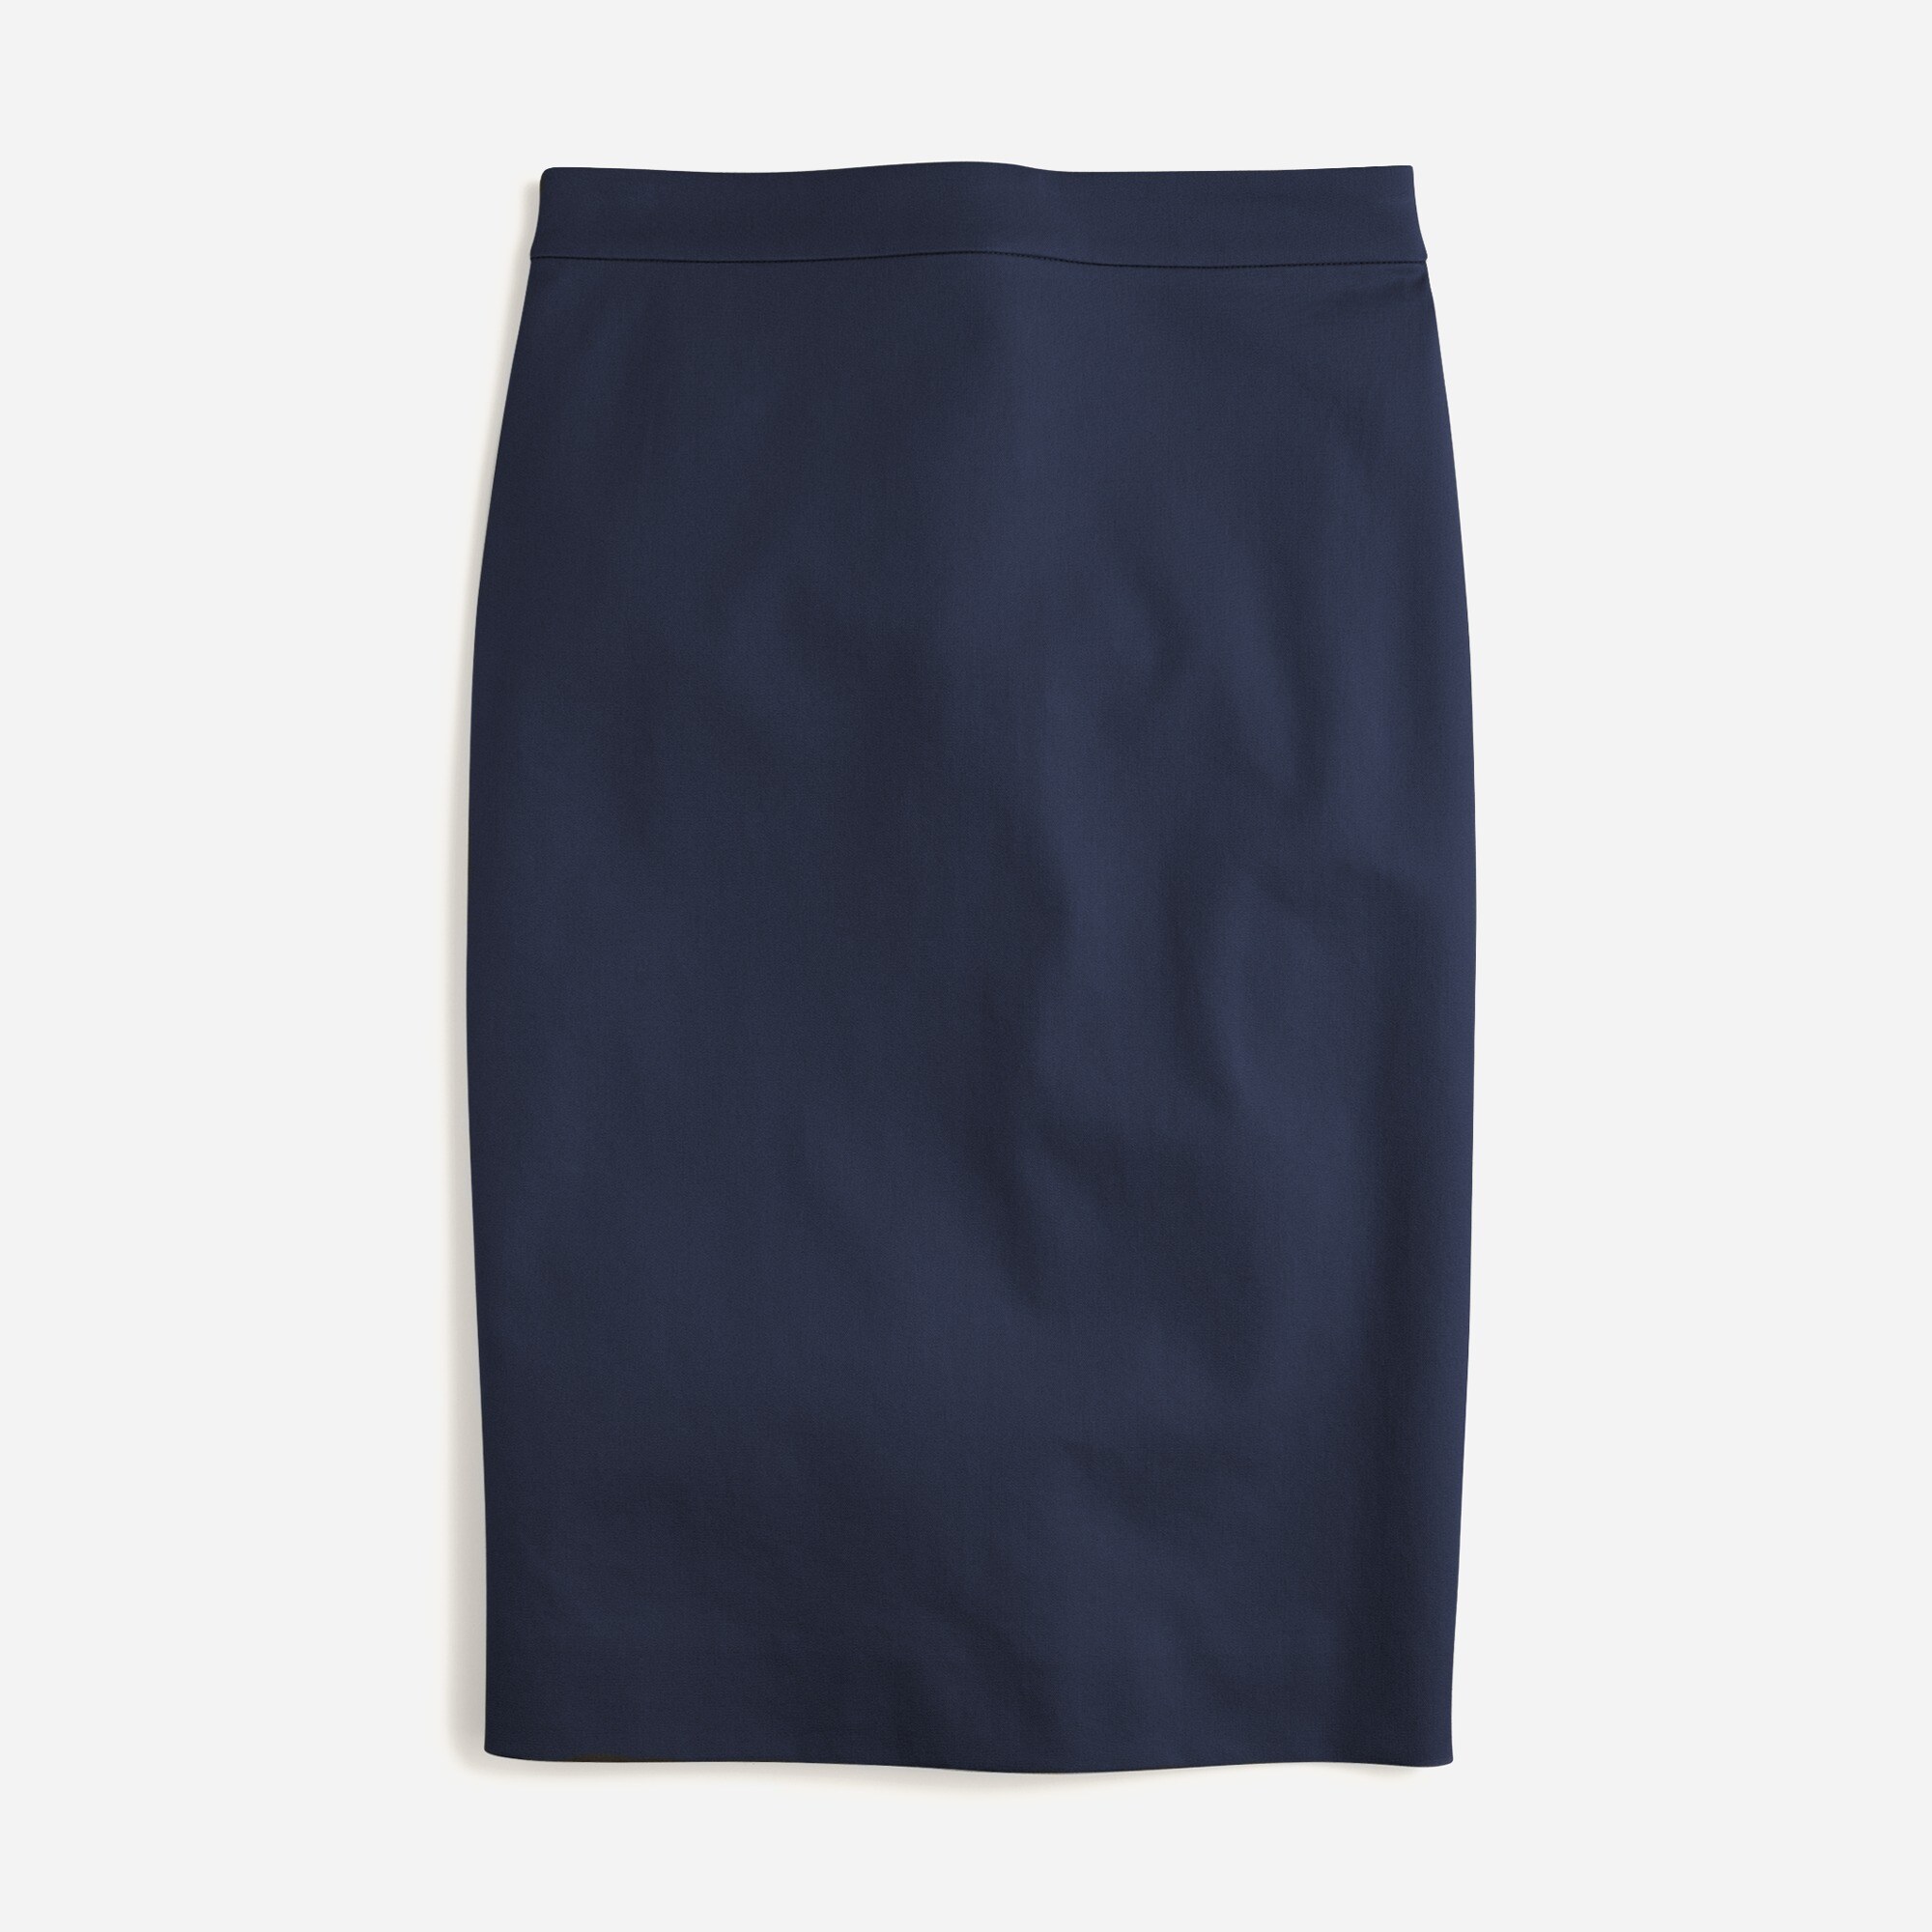  No. 2 Pencil&reg; skirt in bi-stretch cotton blend